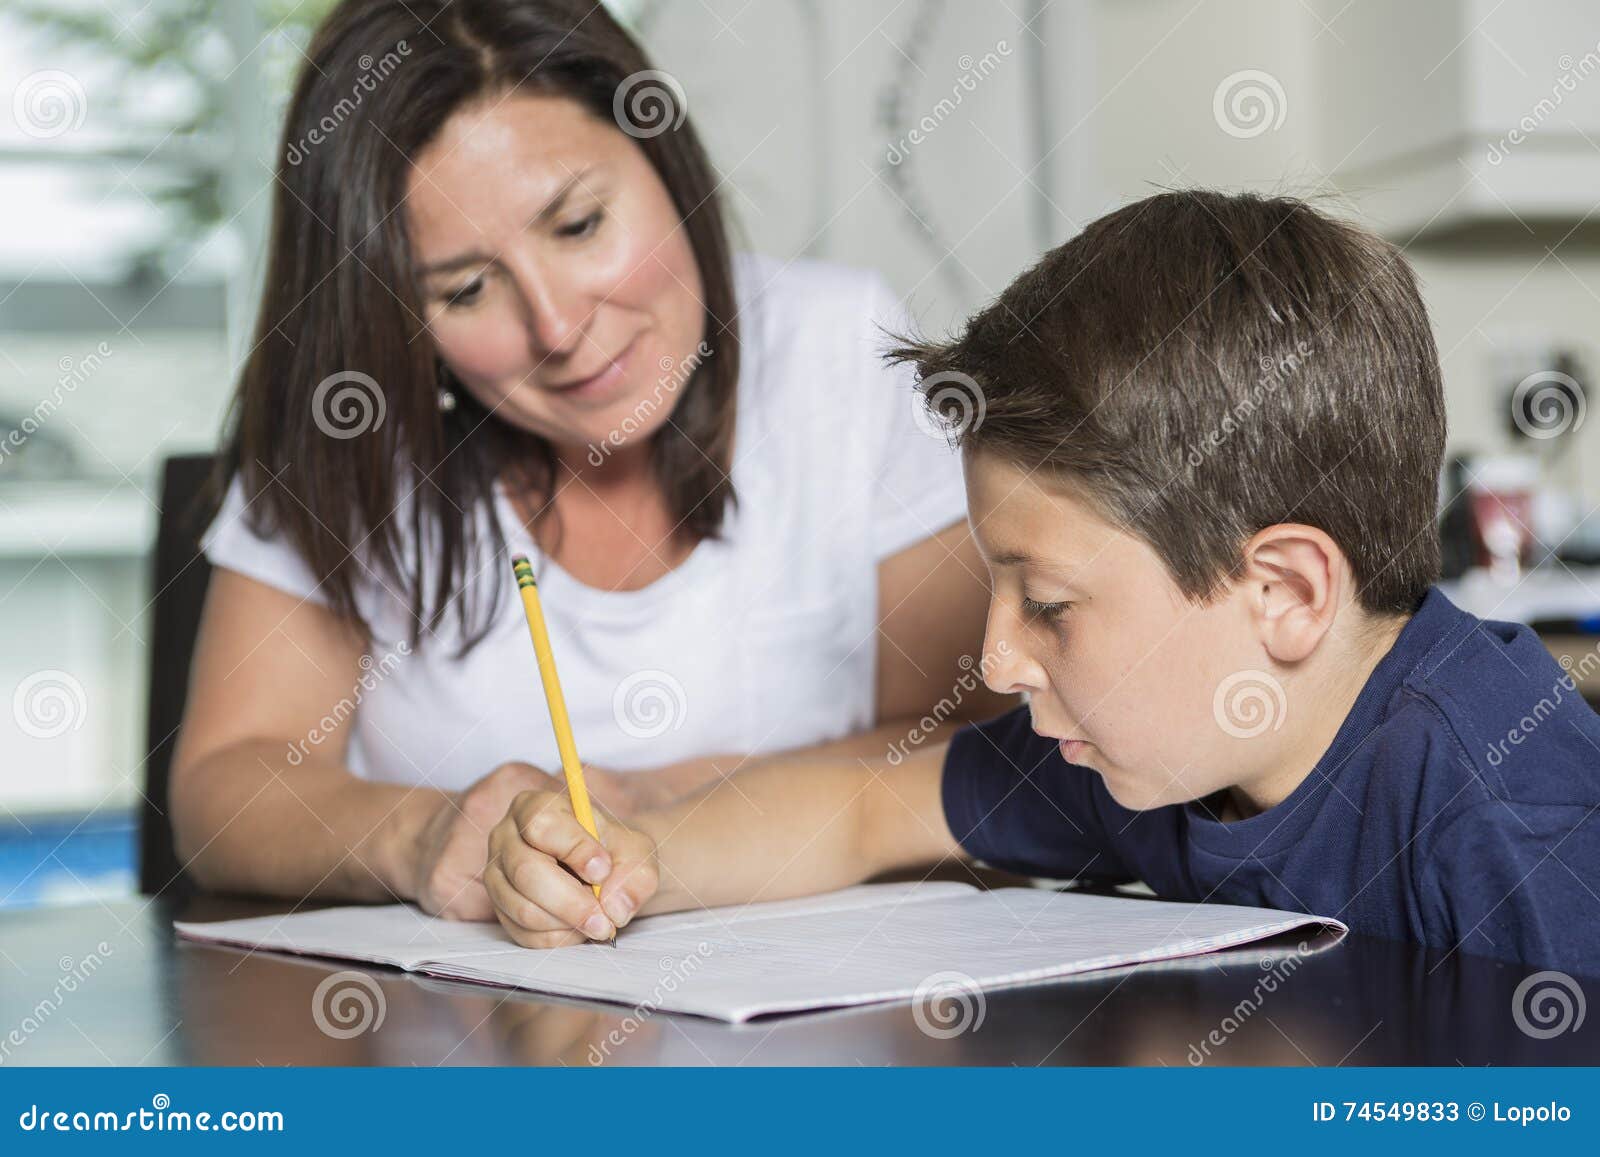 Будешь помогать с уроками. Мама помогает ребенку с уроками. Мама помогает девочке делать уроки фото. Mother helping son.